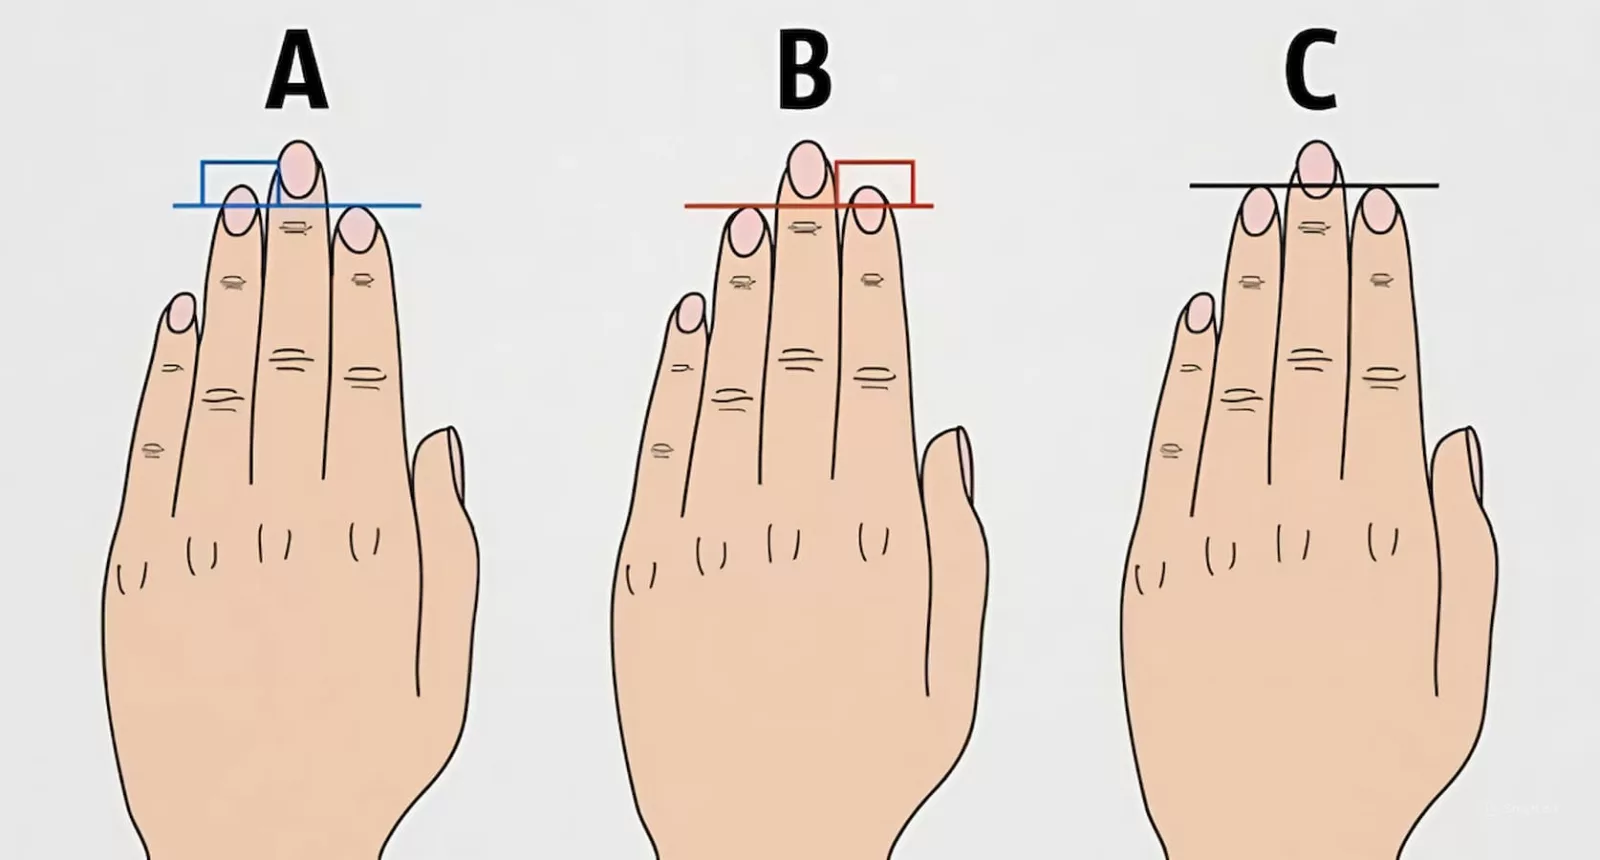 اختبار سريع طول أصابعك سيكشف جوانب مدهشة من شخصيتك